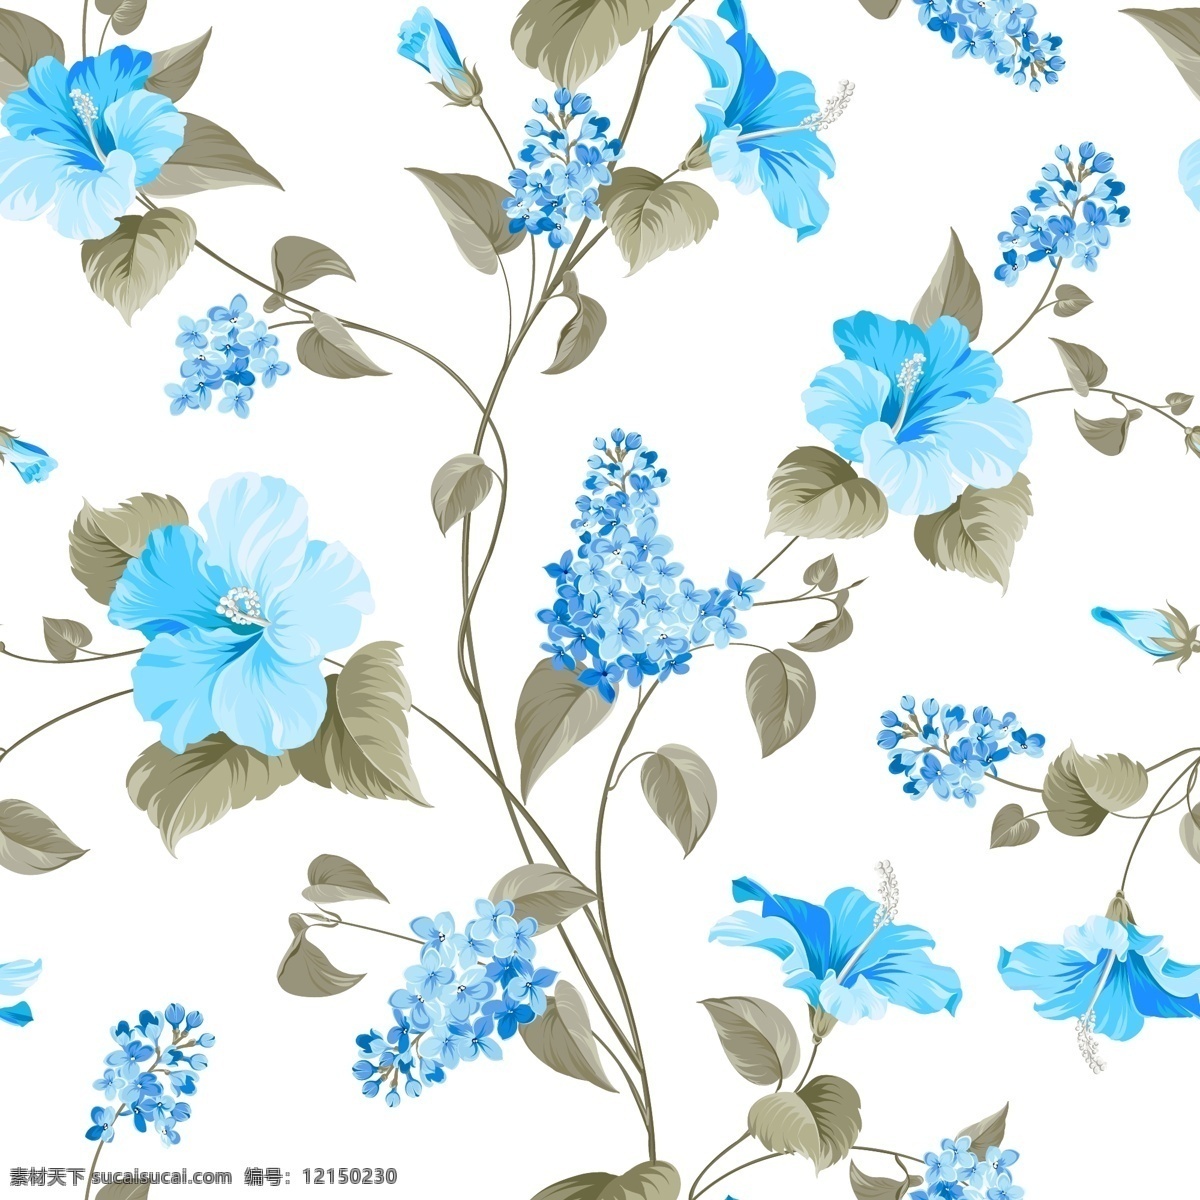 北欧 简约 花朵 背景 精美 植物 花纹 底纹 蓝色树叶 图案 底纹边框 其他素材